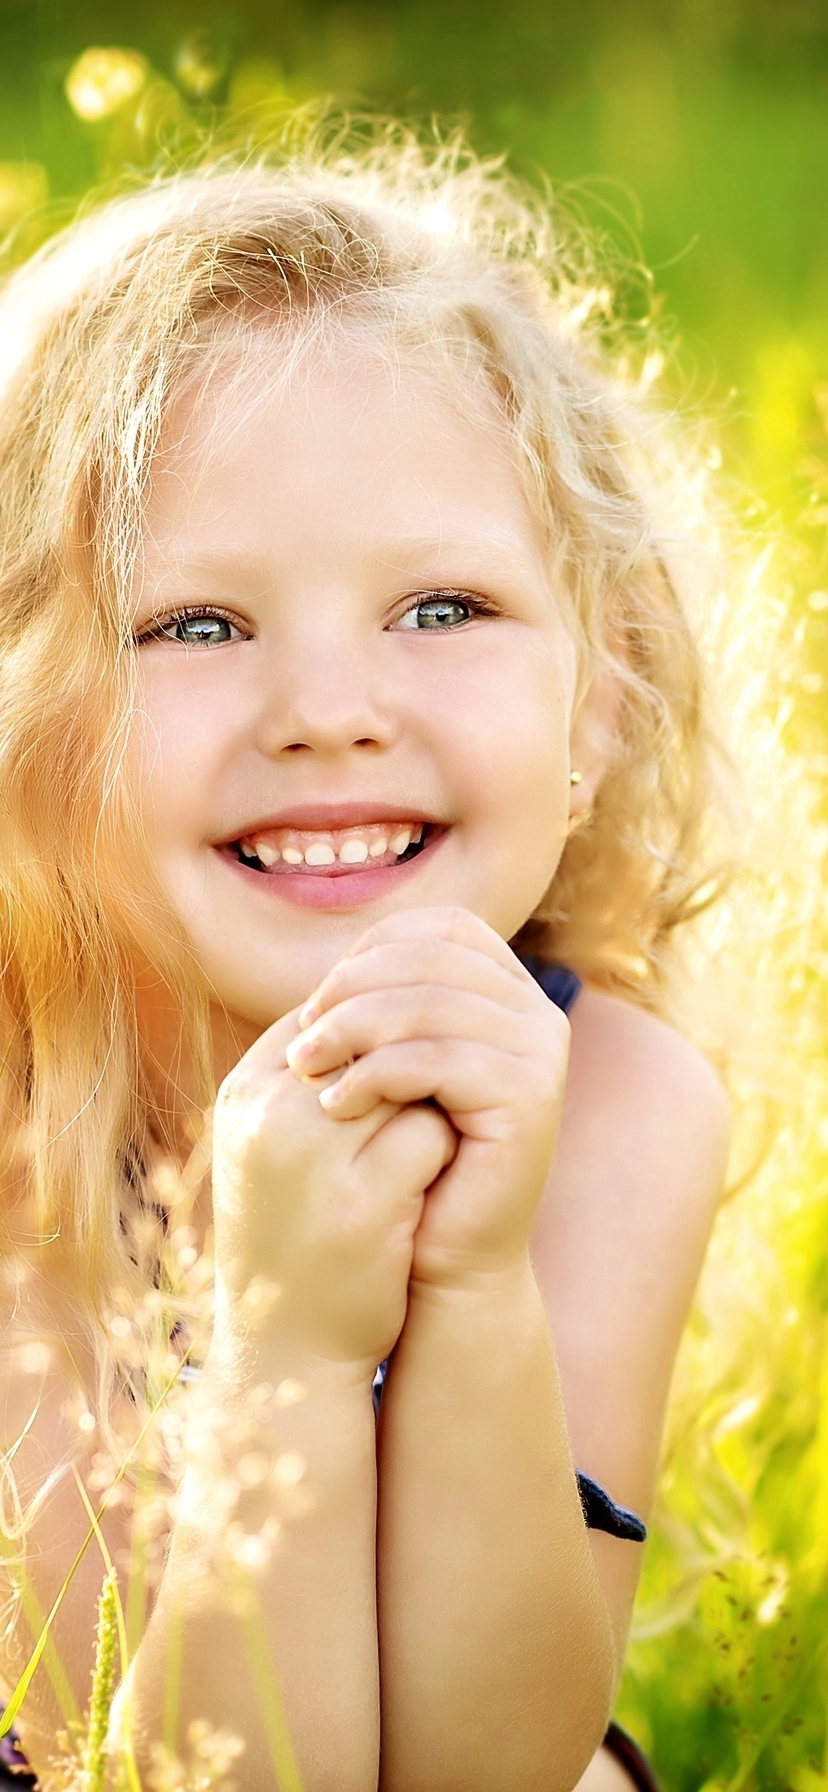 Картинка: Девочка, лицо, светлые волосы, улыбка, настроение, лето, трава